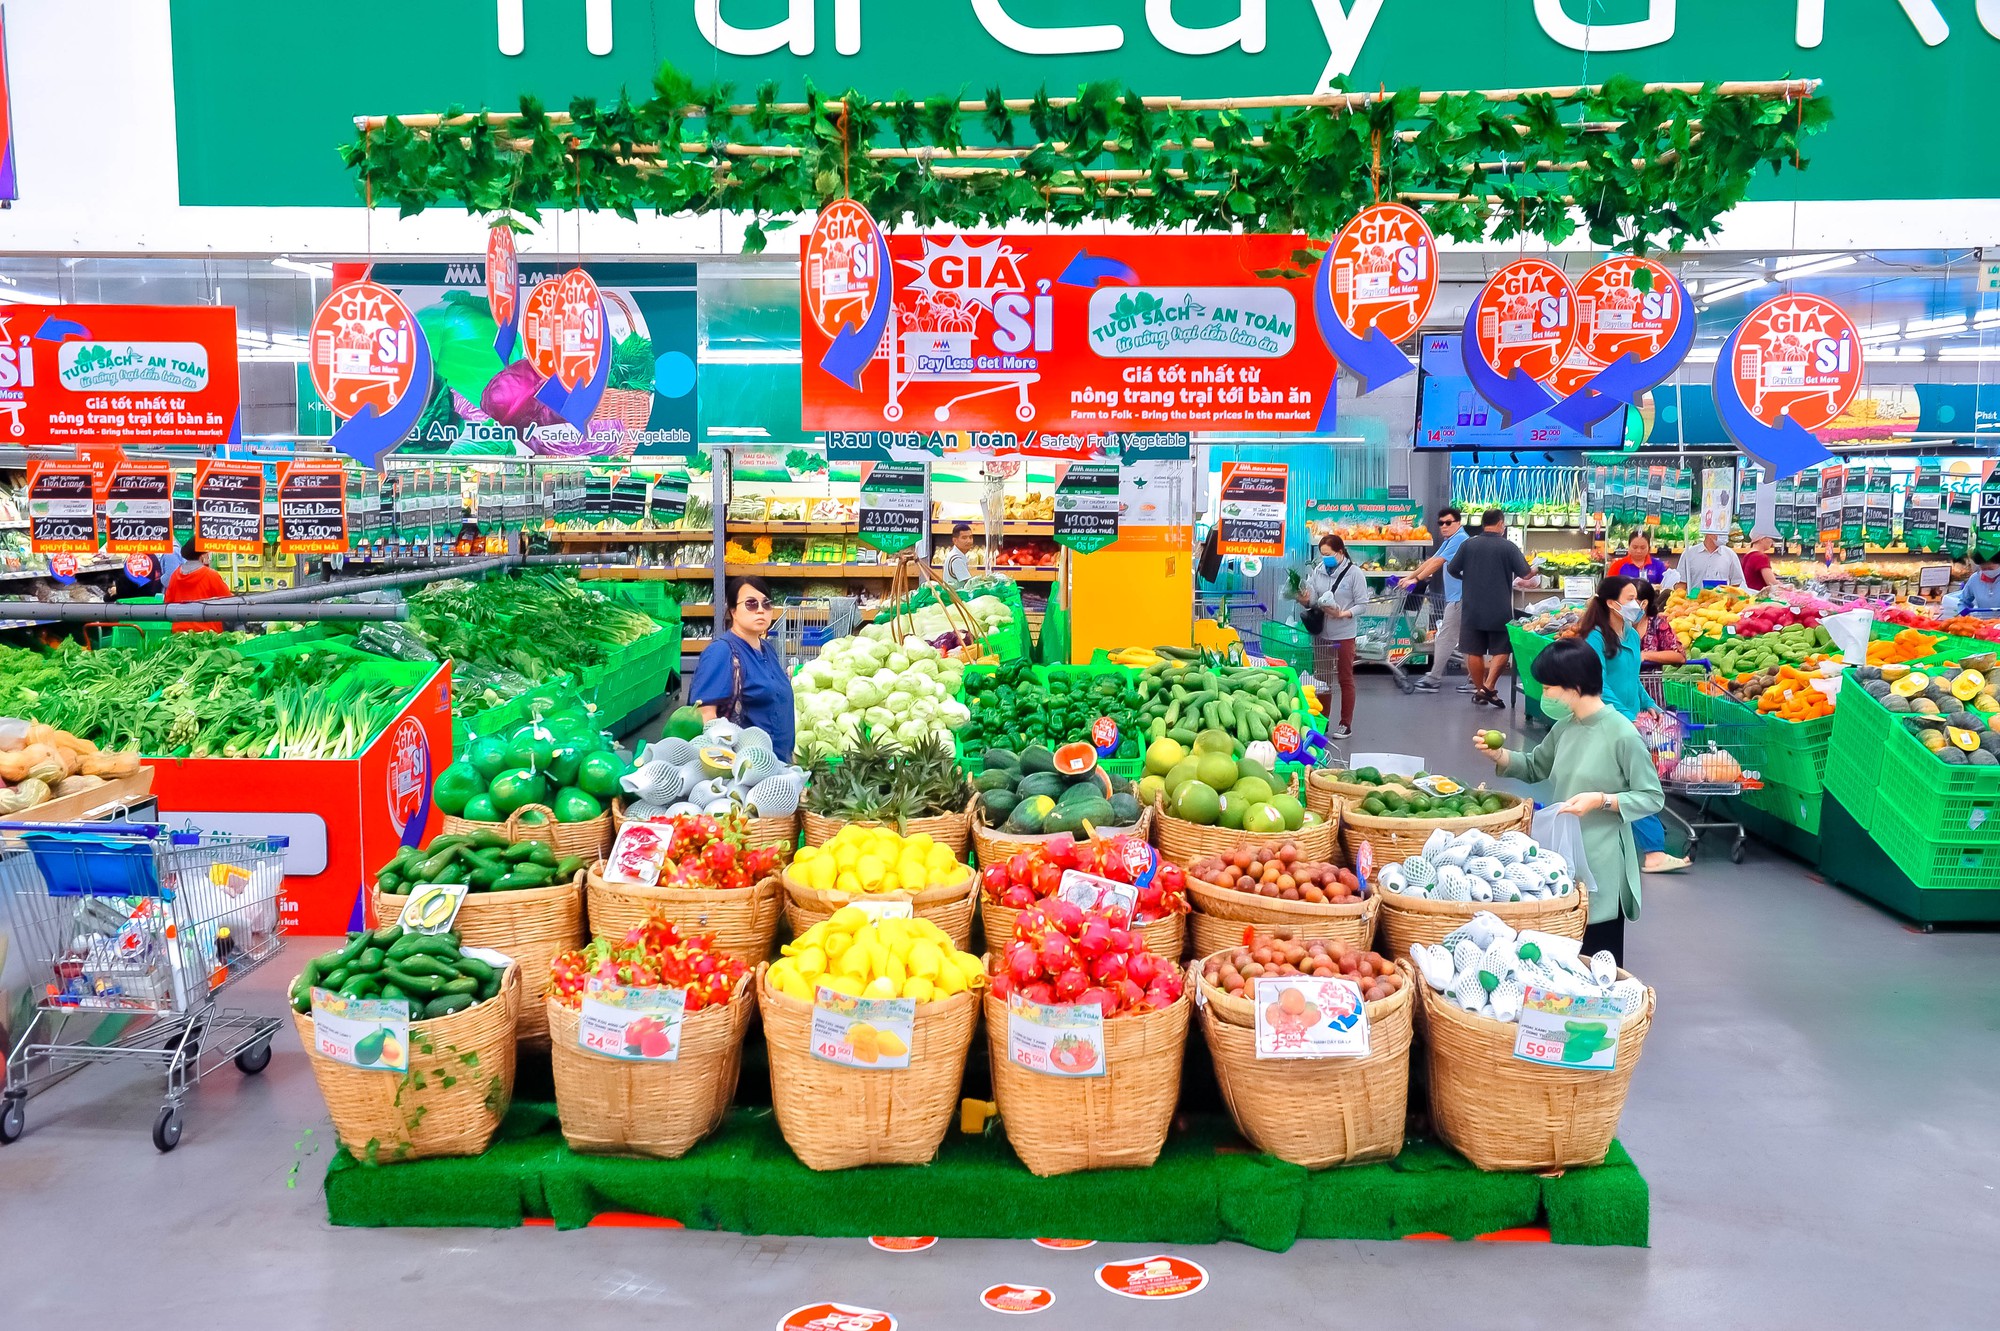 Một siêu thị lớn triển khai 2 chiến dịch về giá lớn nhất năm, rau củ, hải sản giá &quot;mềm&quot; như chợ đầu mối - Ảnh 2.